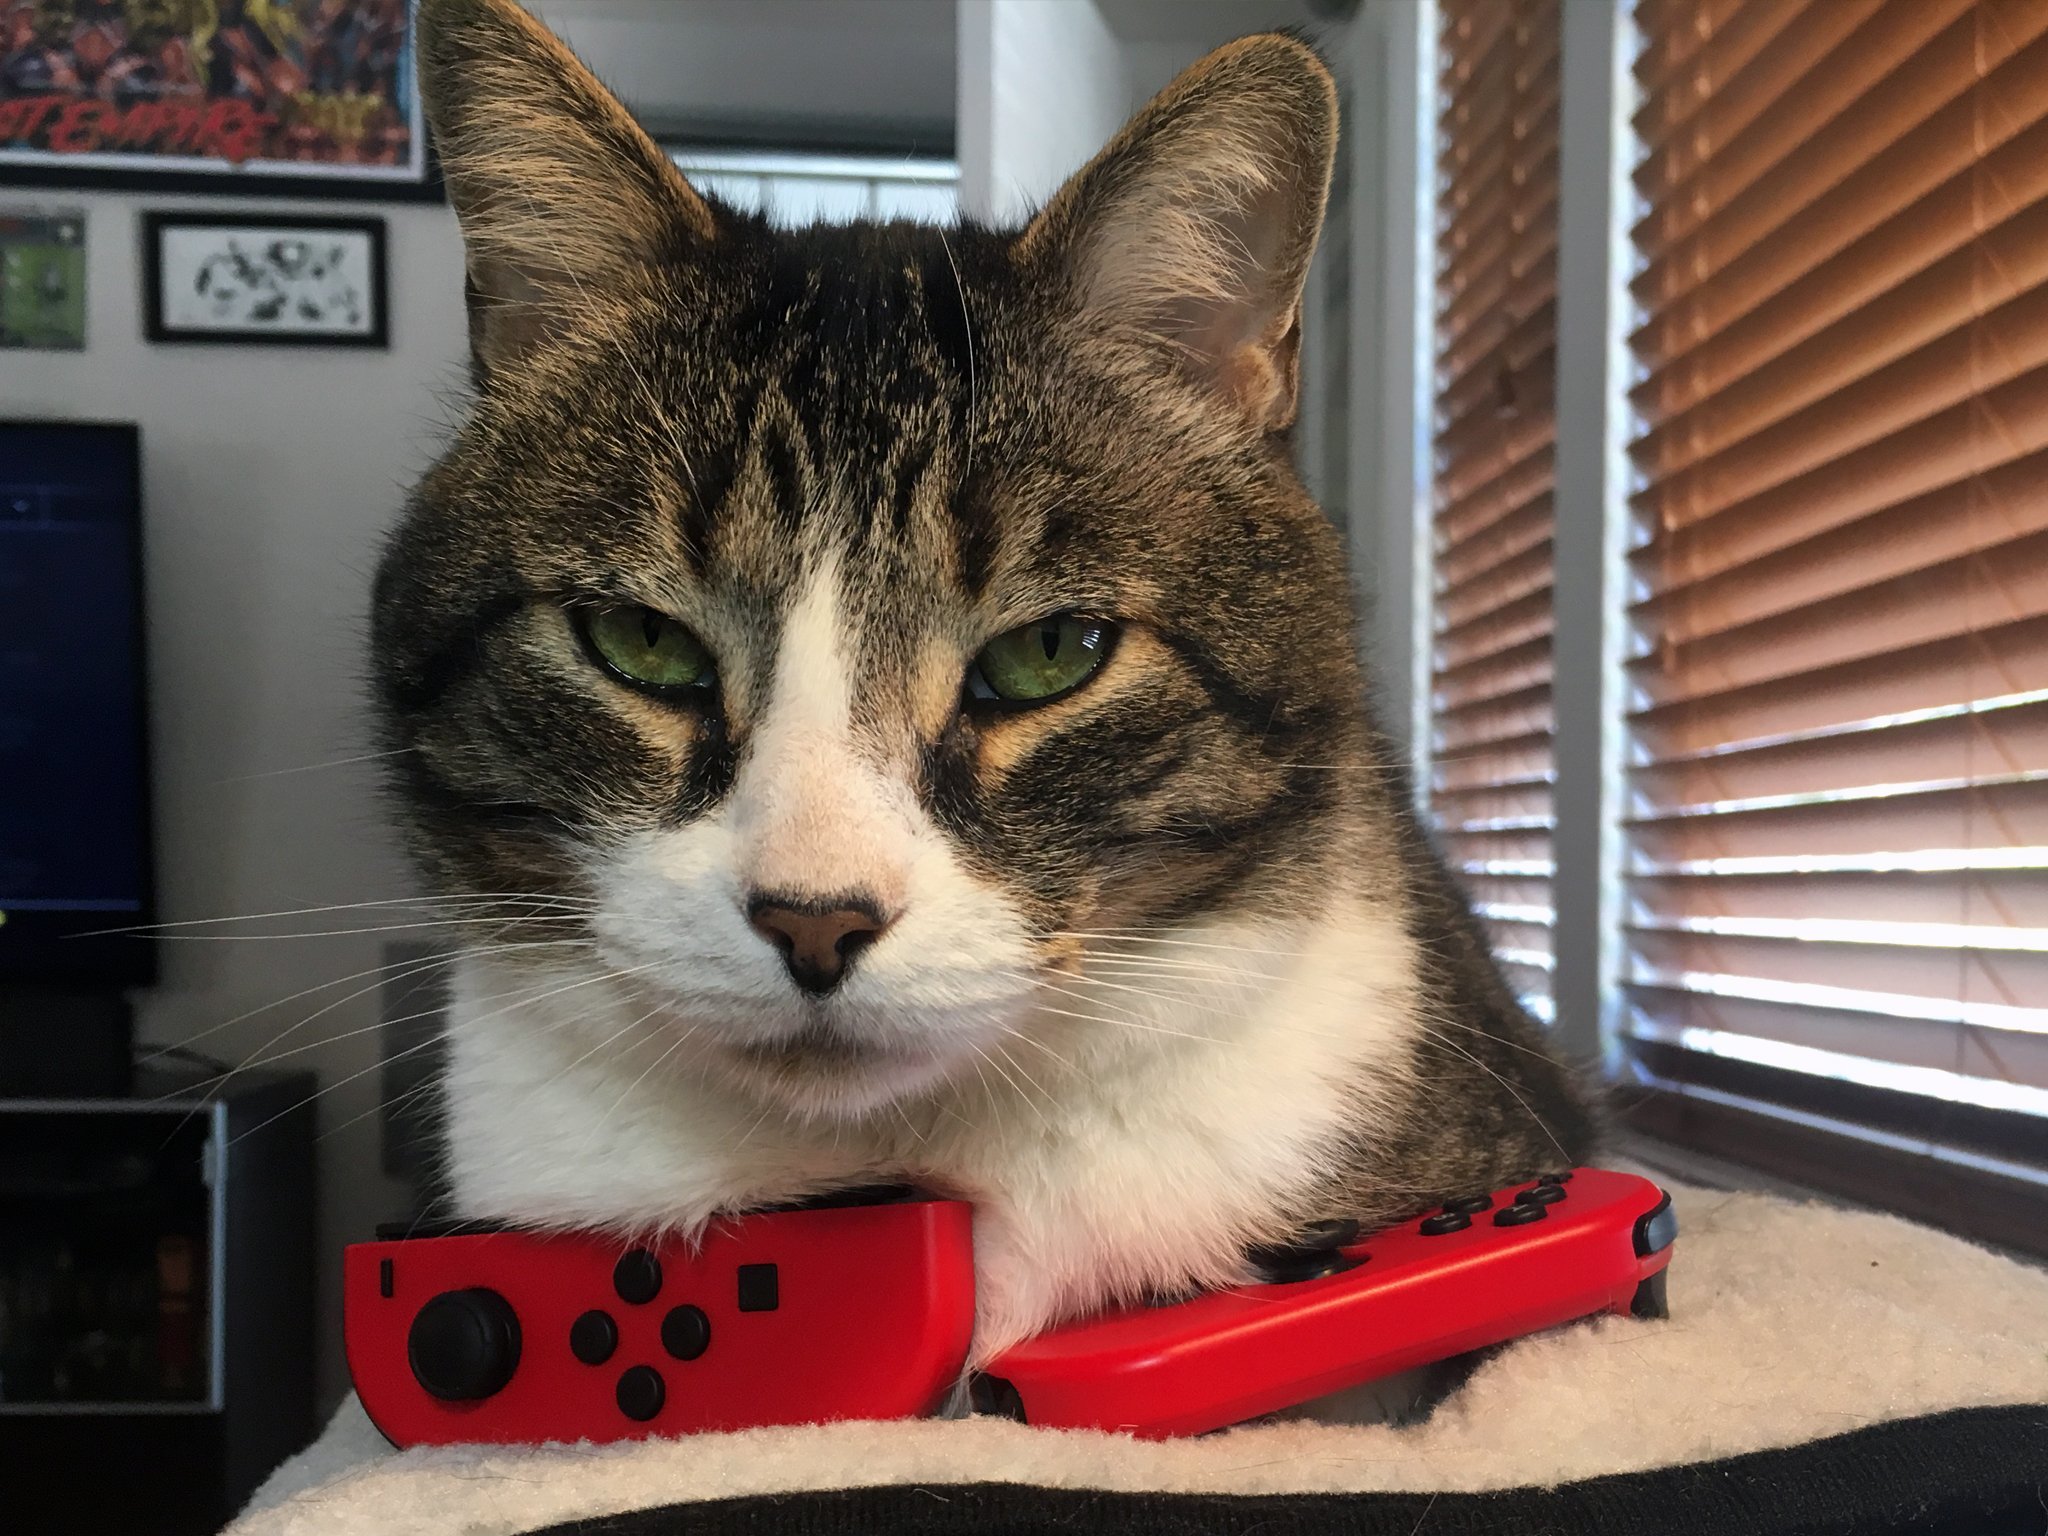 Nintendo cat